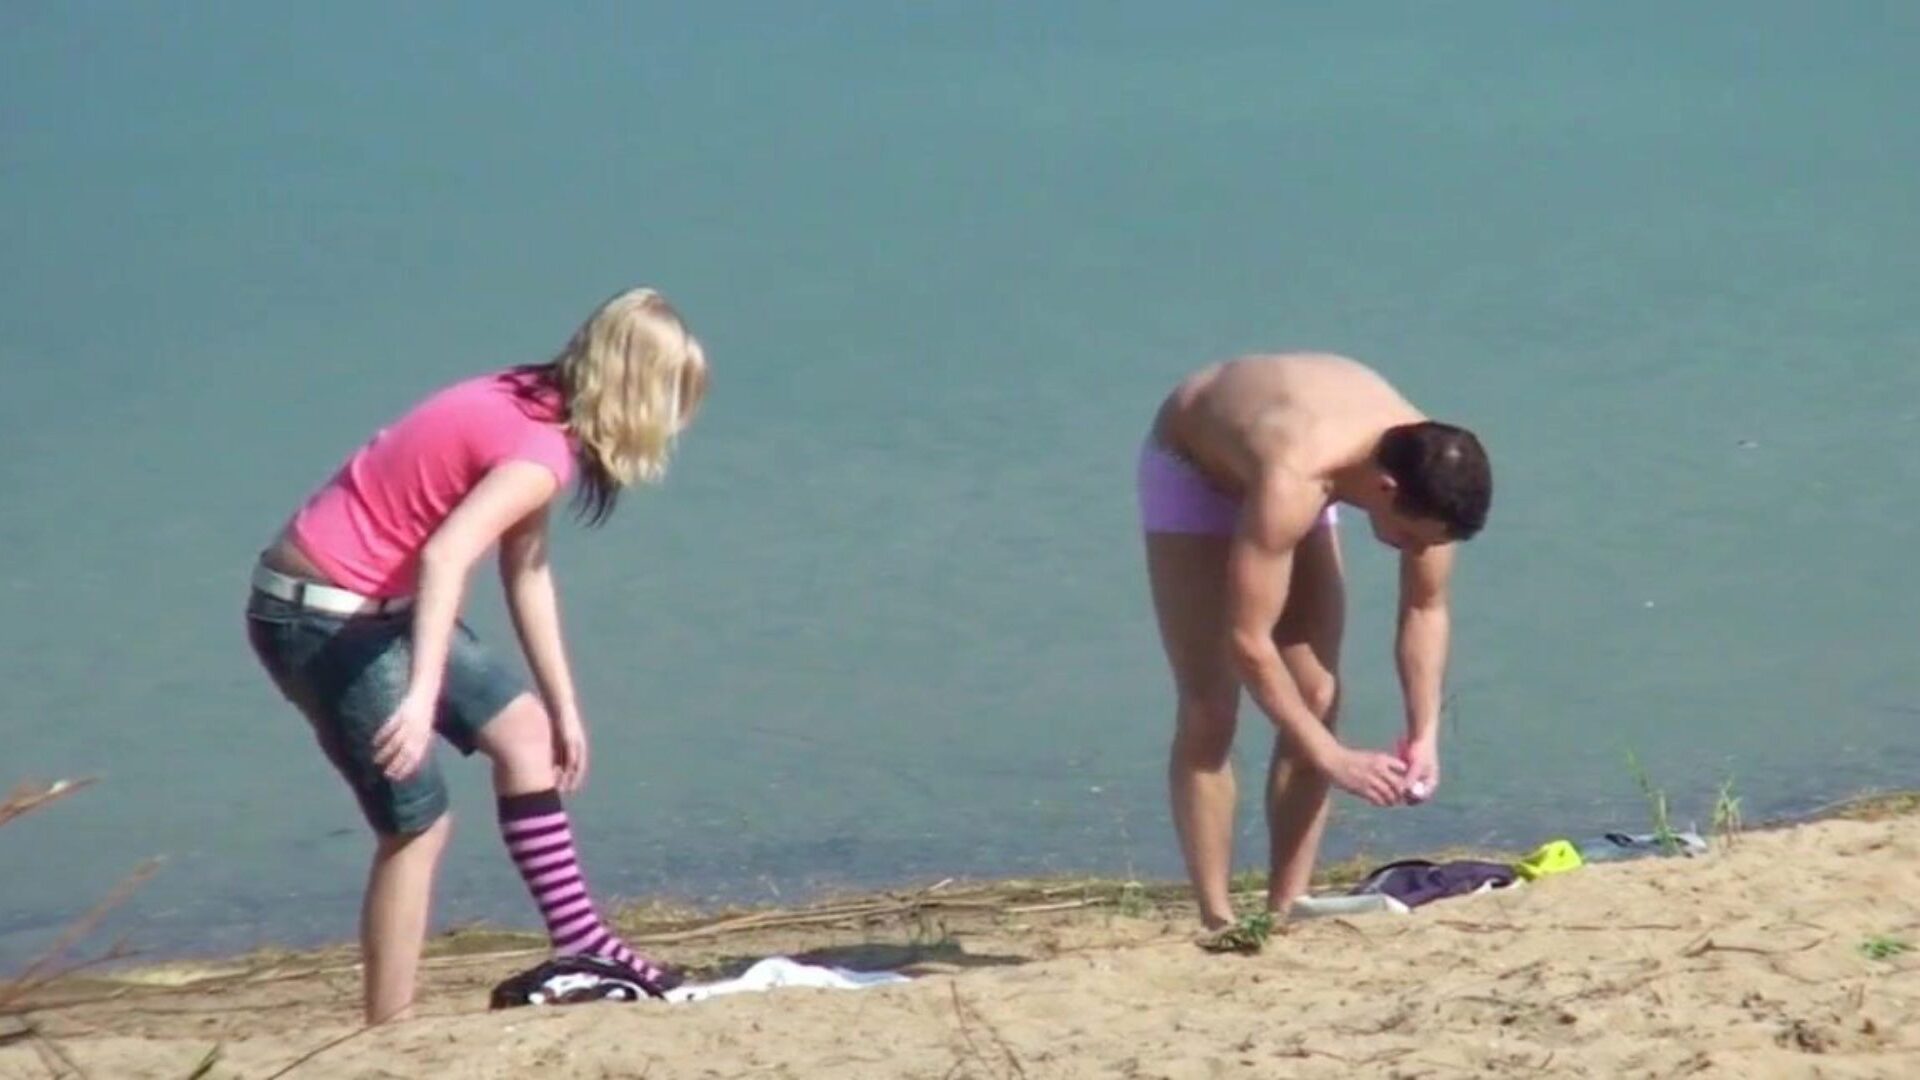 πραγματικό εφηβικό ζευγάρι στην γερμανική παραλία ηδονοβλεψία σκατά από ξένο ρολόι πραγματικό εφηβικό ζευγάρι στην γερμανική παραλία ηδονοβλεψία σκατά από ξένο επεισόδιο στο xhamster - η απόλυτη επιλογή δωρεάν voyeur xxx & γερμανικά νέα πορνό βίντεο πορνό hd